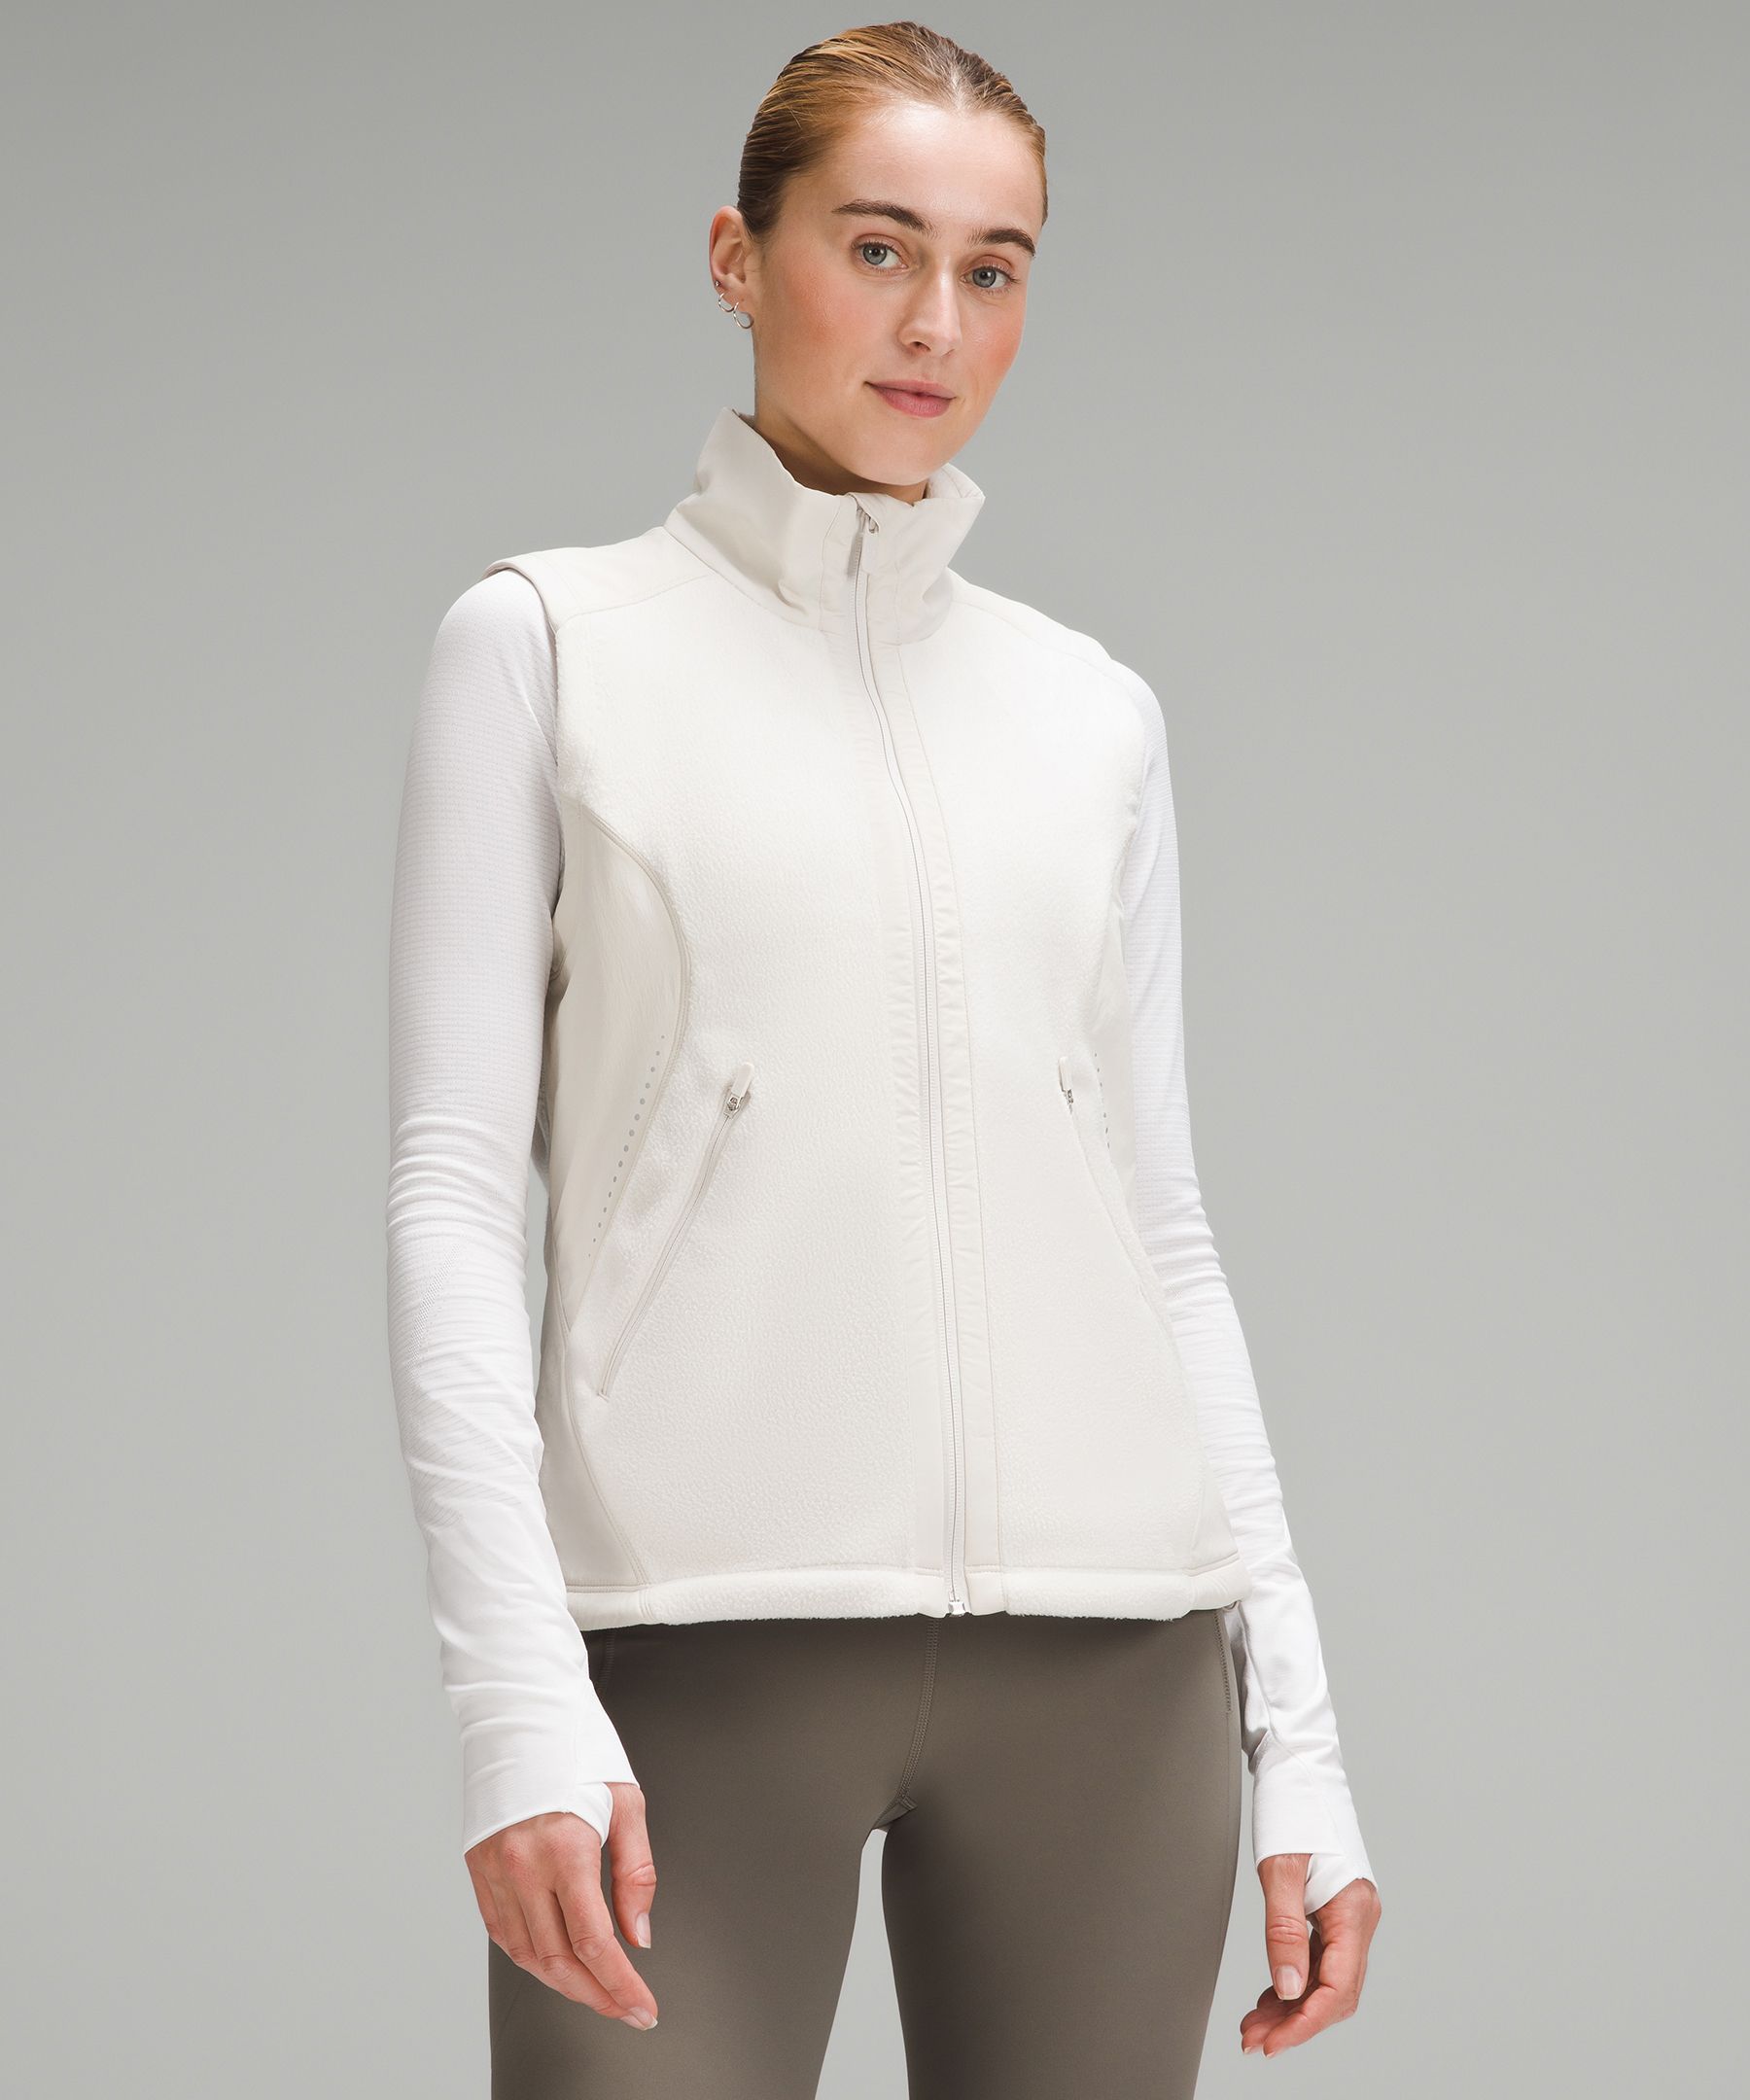 Fleece-Lined Running Vest, Women's Coats & Jackets